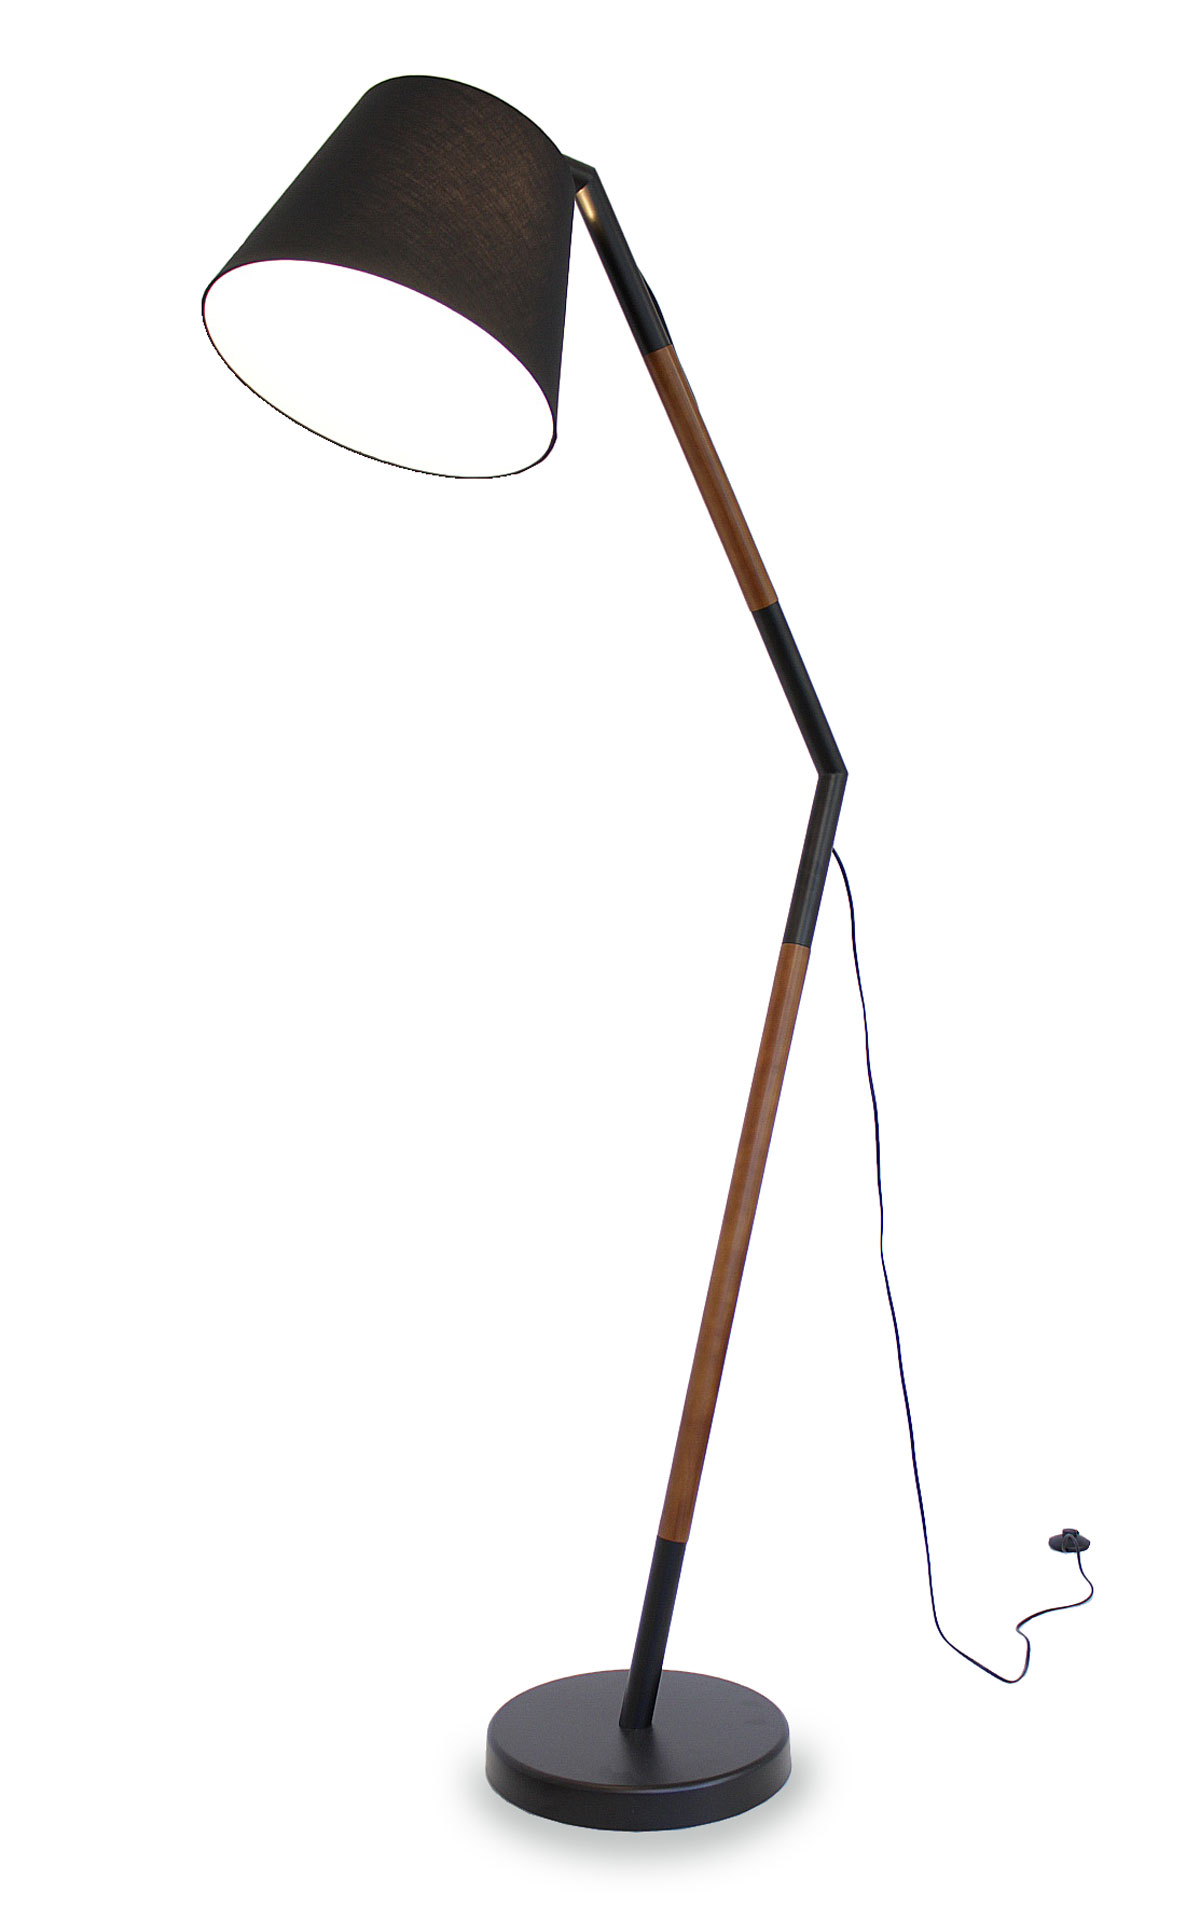 Paket] Stehleuchte Bogenleuchte Asseri braun + schwarz Textil-Lampenschirm  189 cm 10954 | Kiom24 Designlamps